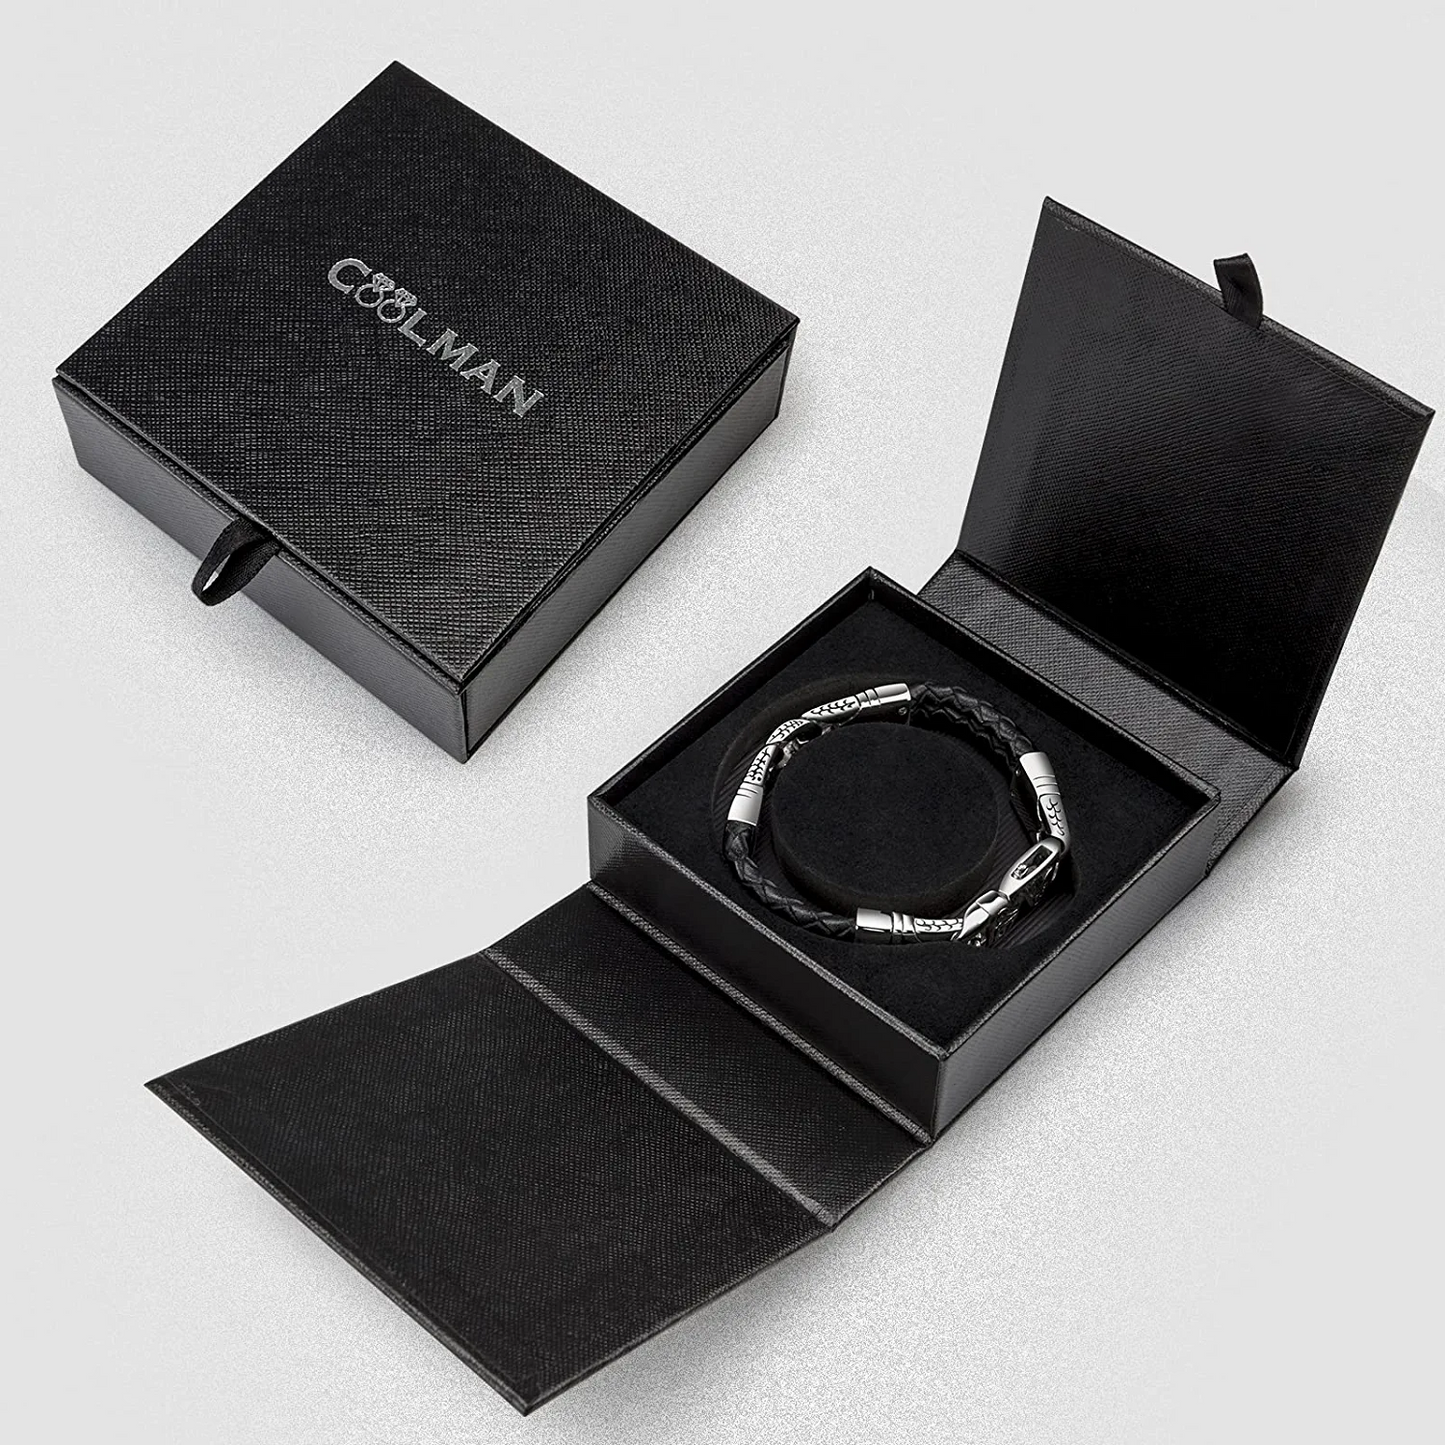 Coolman Men's Leather Bracelet Black and Silver Cuff Bracelet for Men